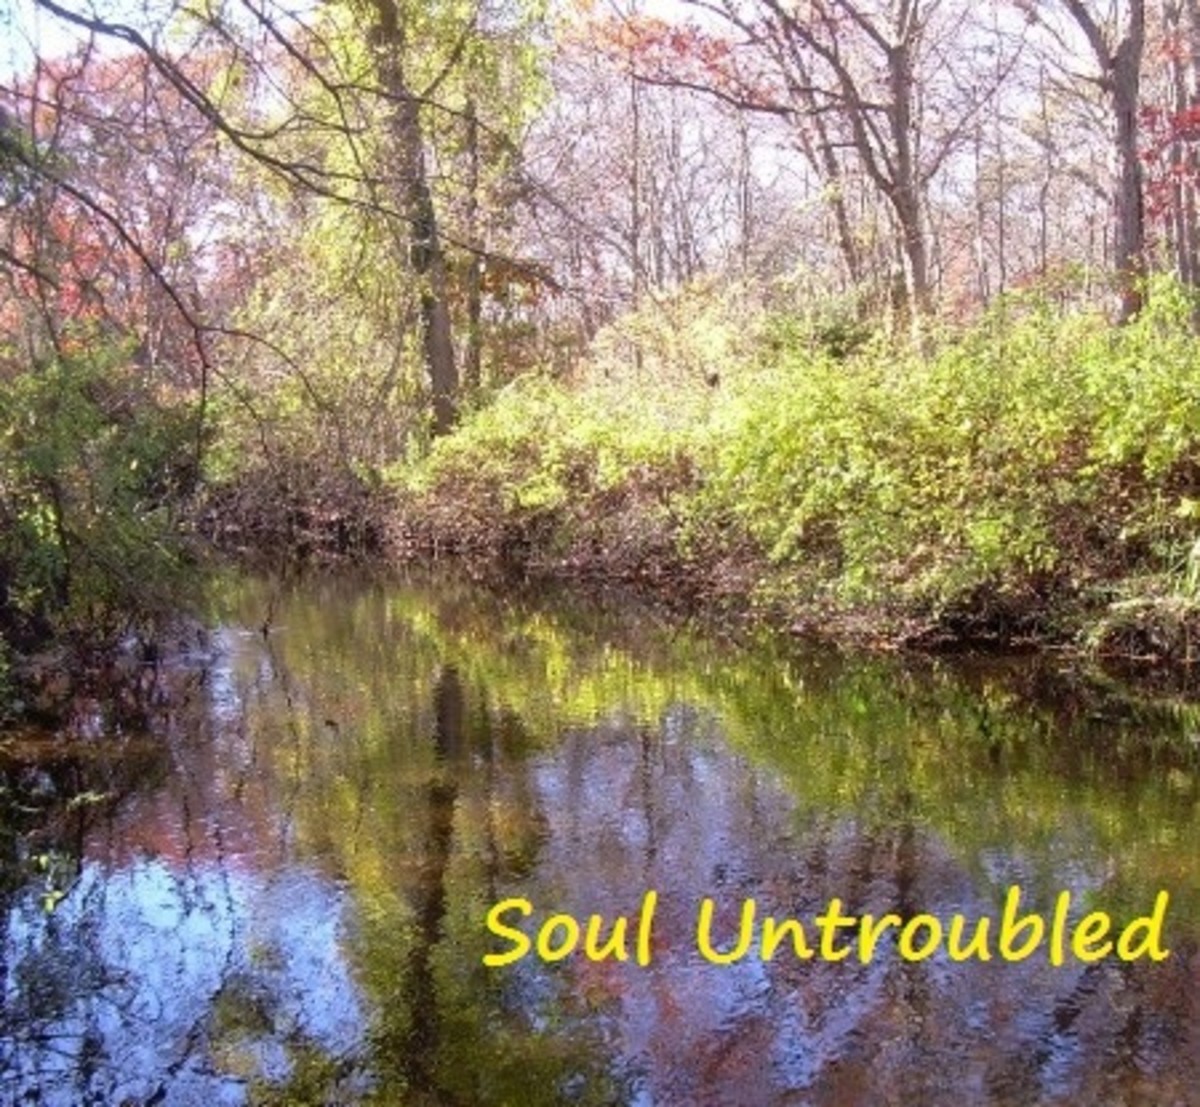 Soul Untroubled